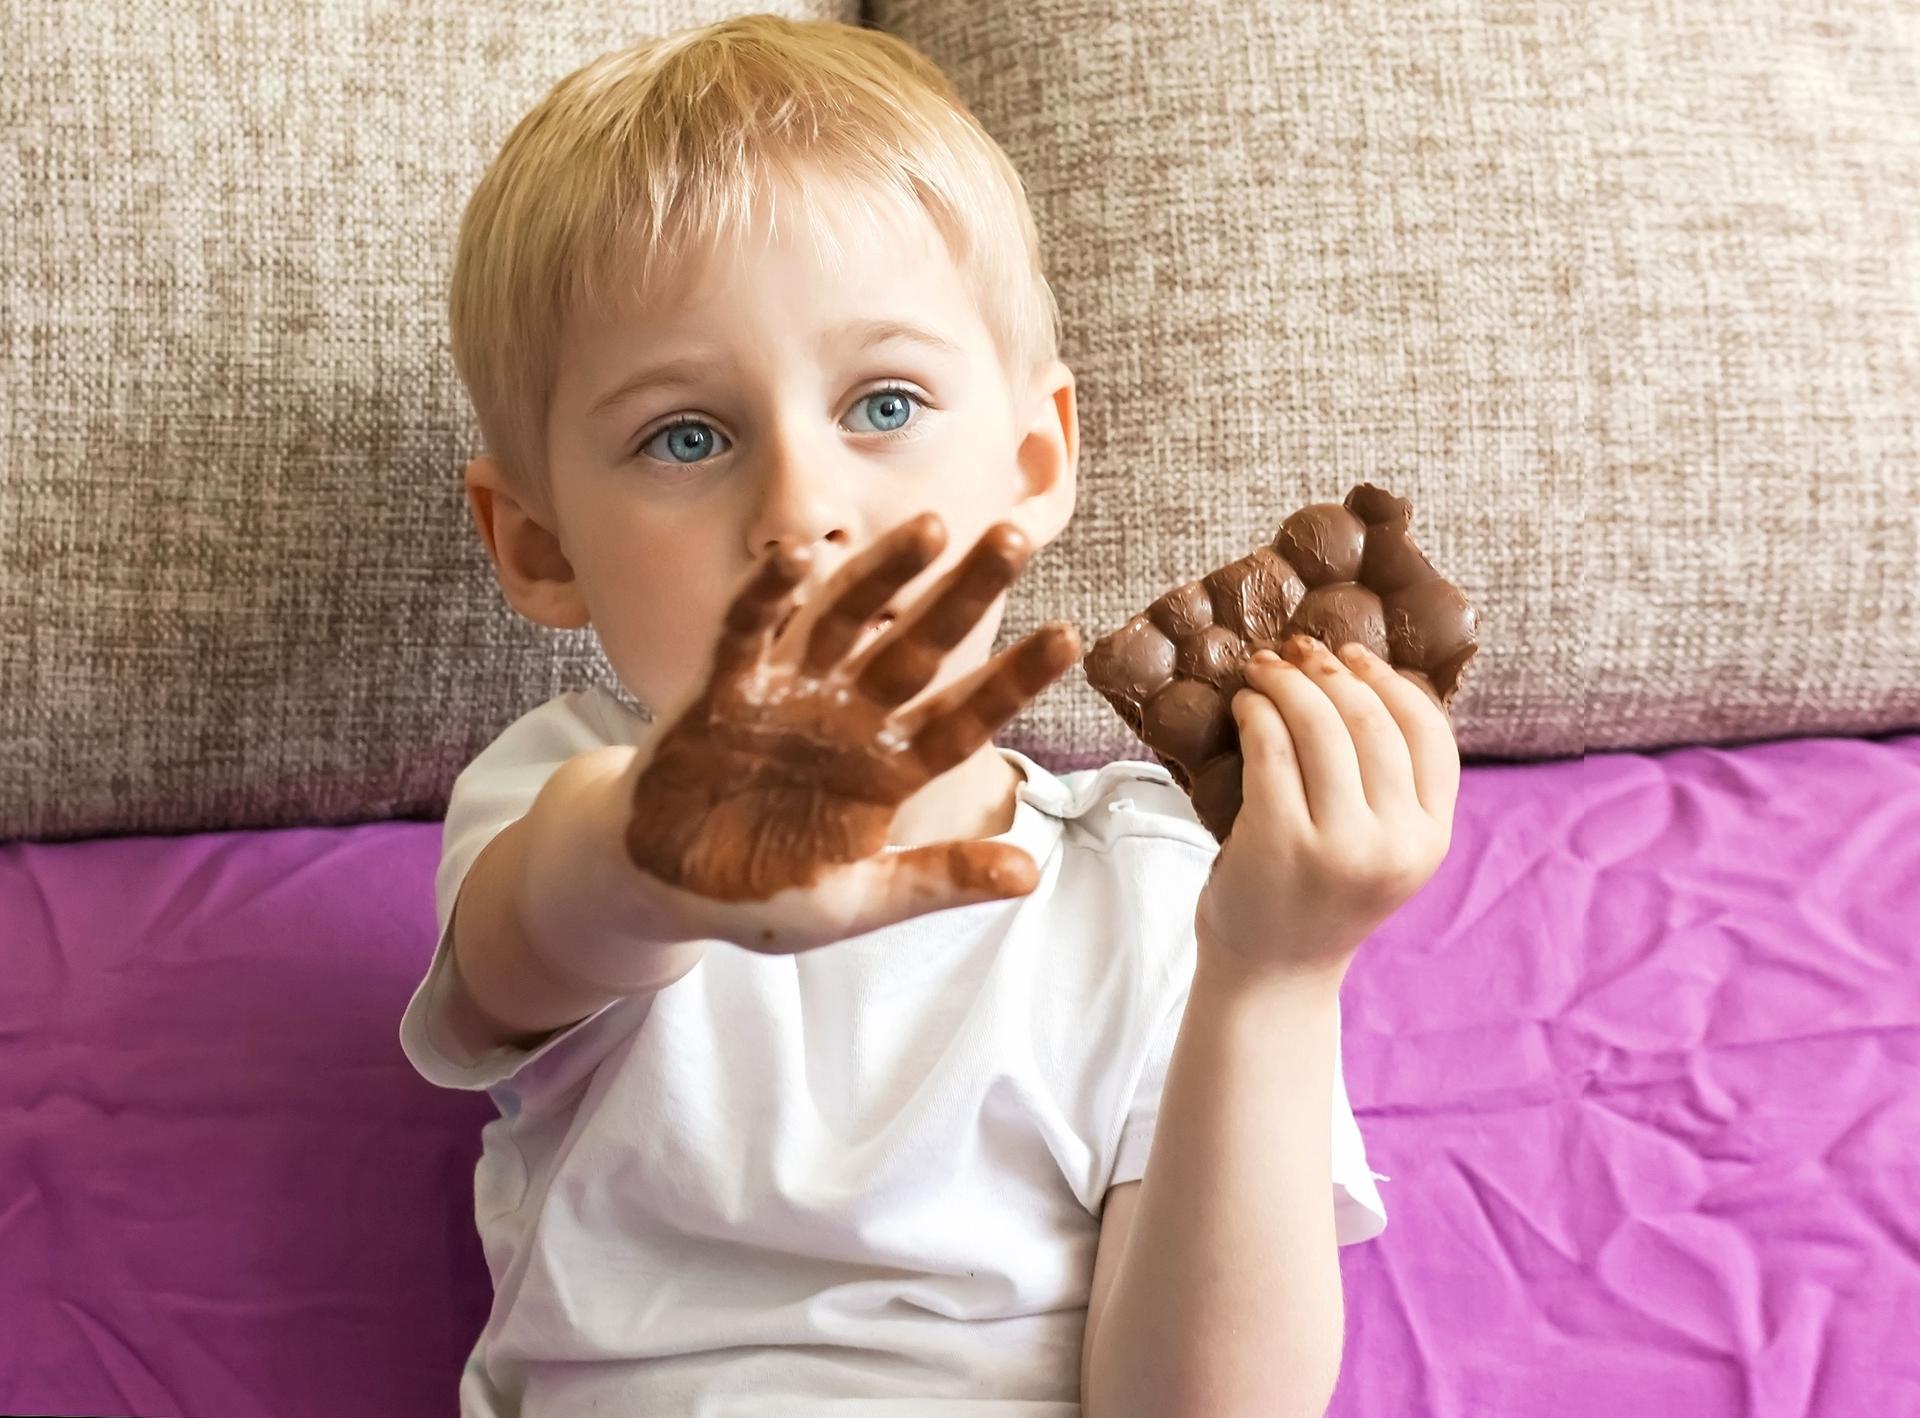 Дядя тянет руку в руке шоколадка. Конфетка в руке. Конфеты детям. Мальчик ест шоколад.